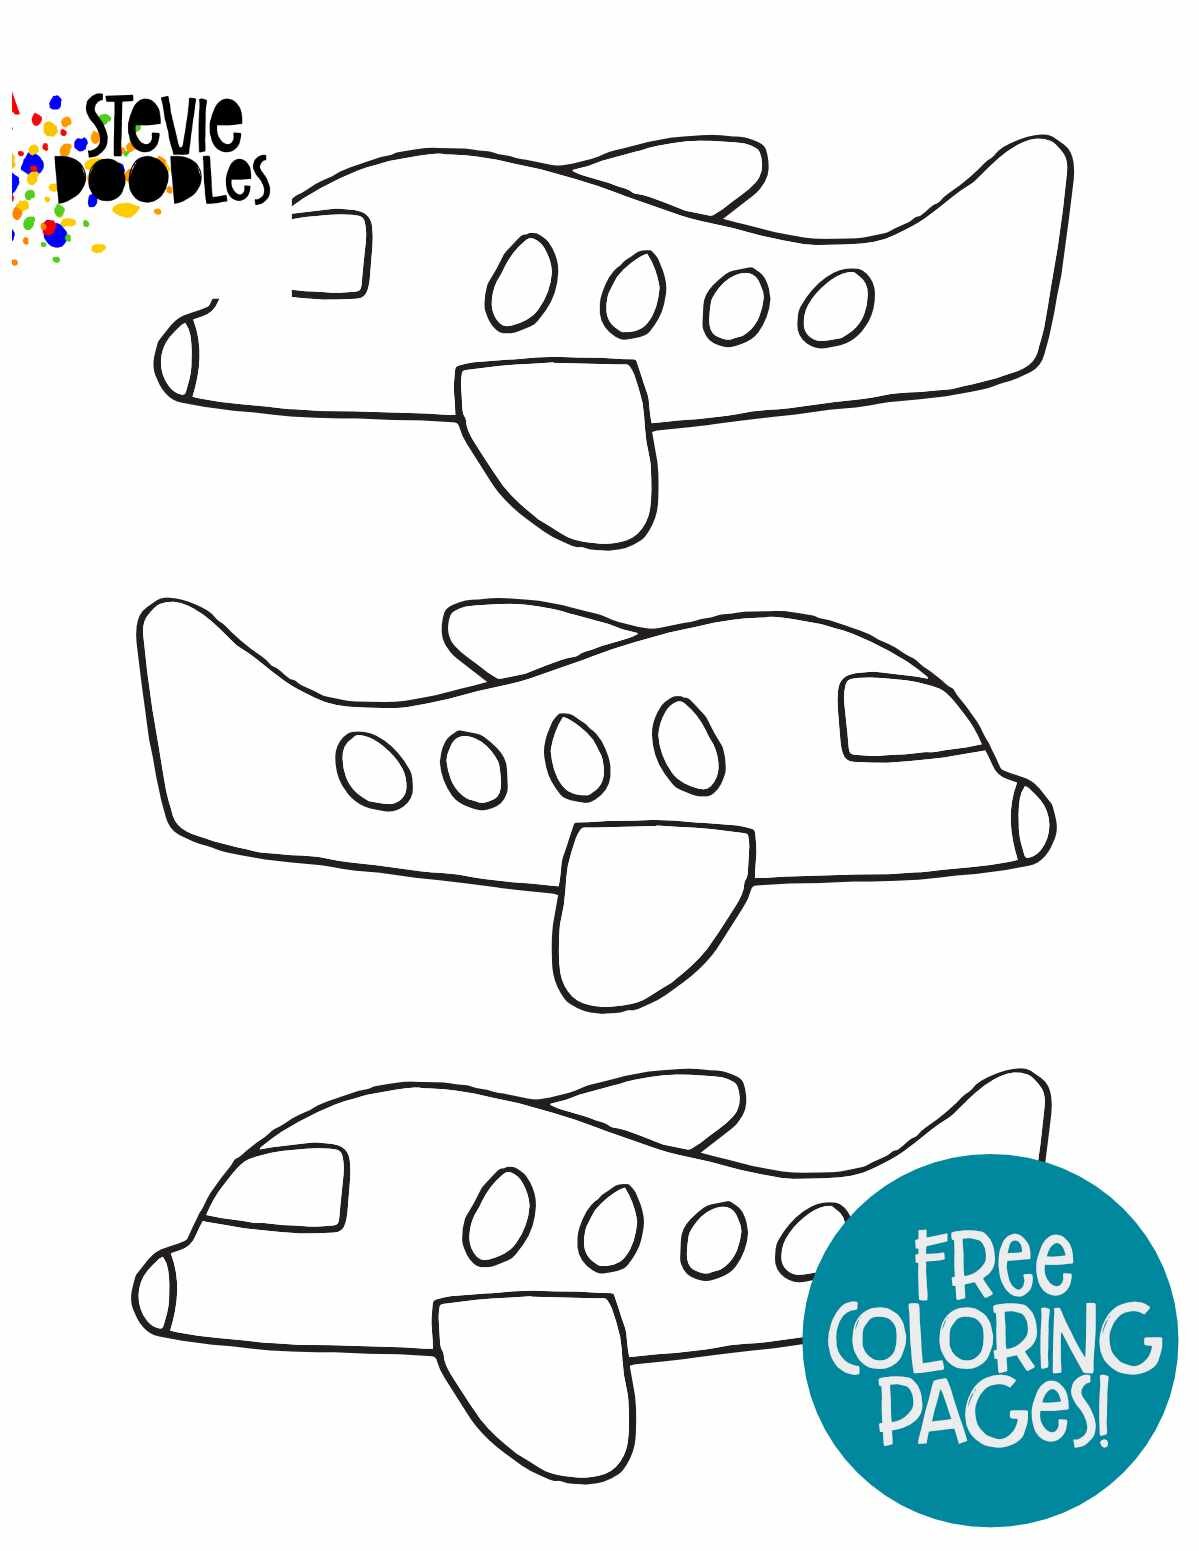 3 Passenger Planes plain Stevie Doodles.jpg